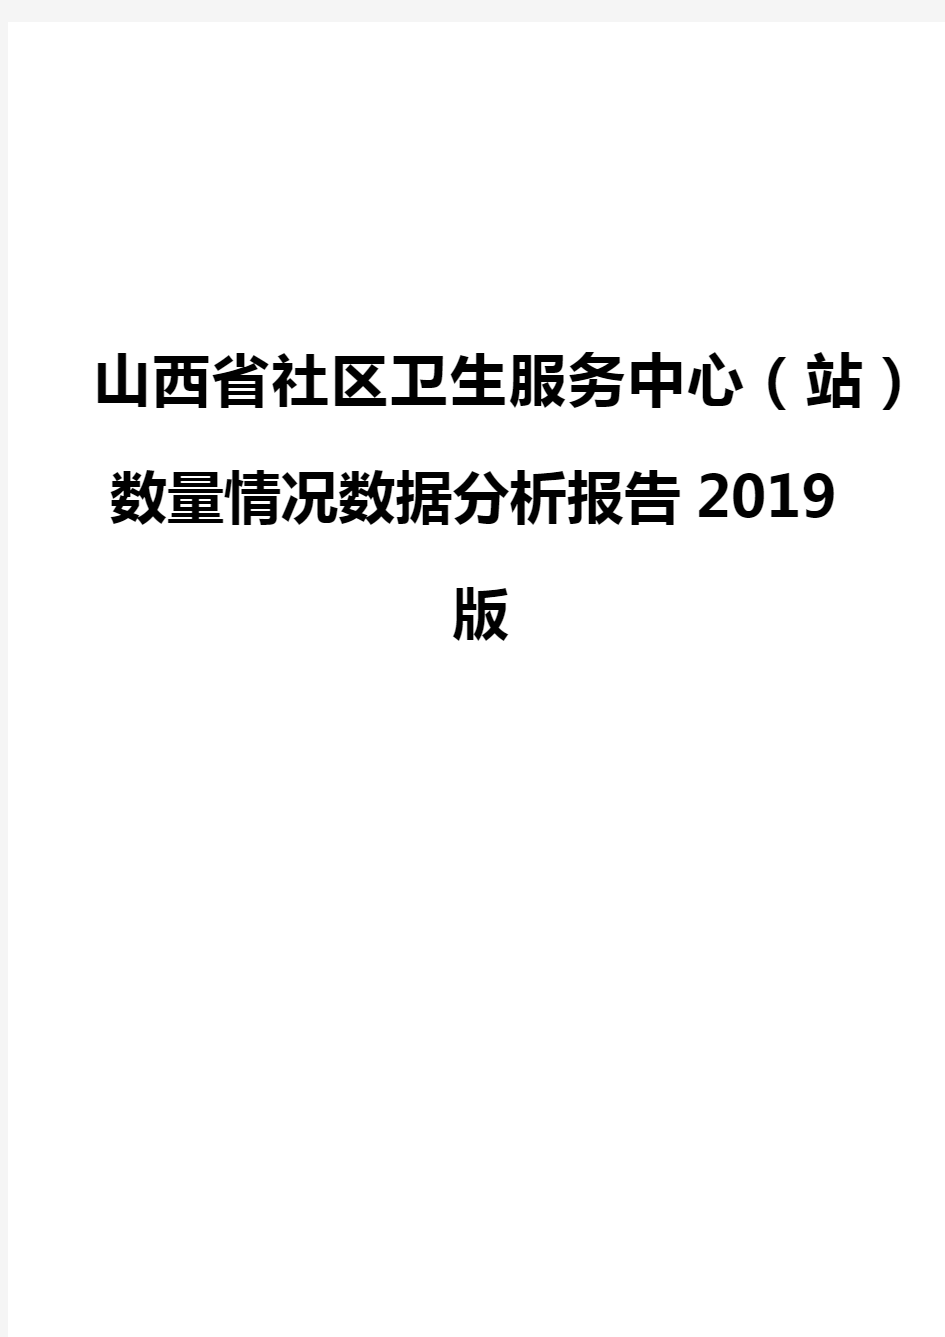 山西省社区卫生服务中心(站)数量情况数据分析报告2019版